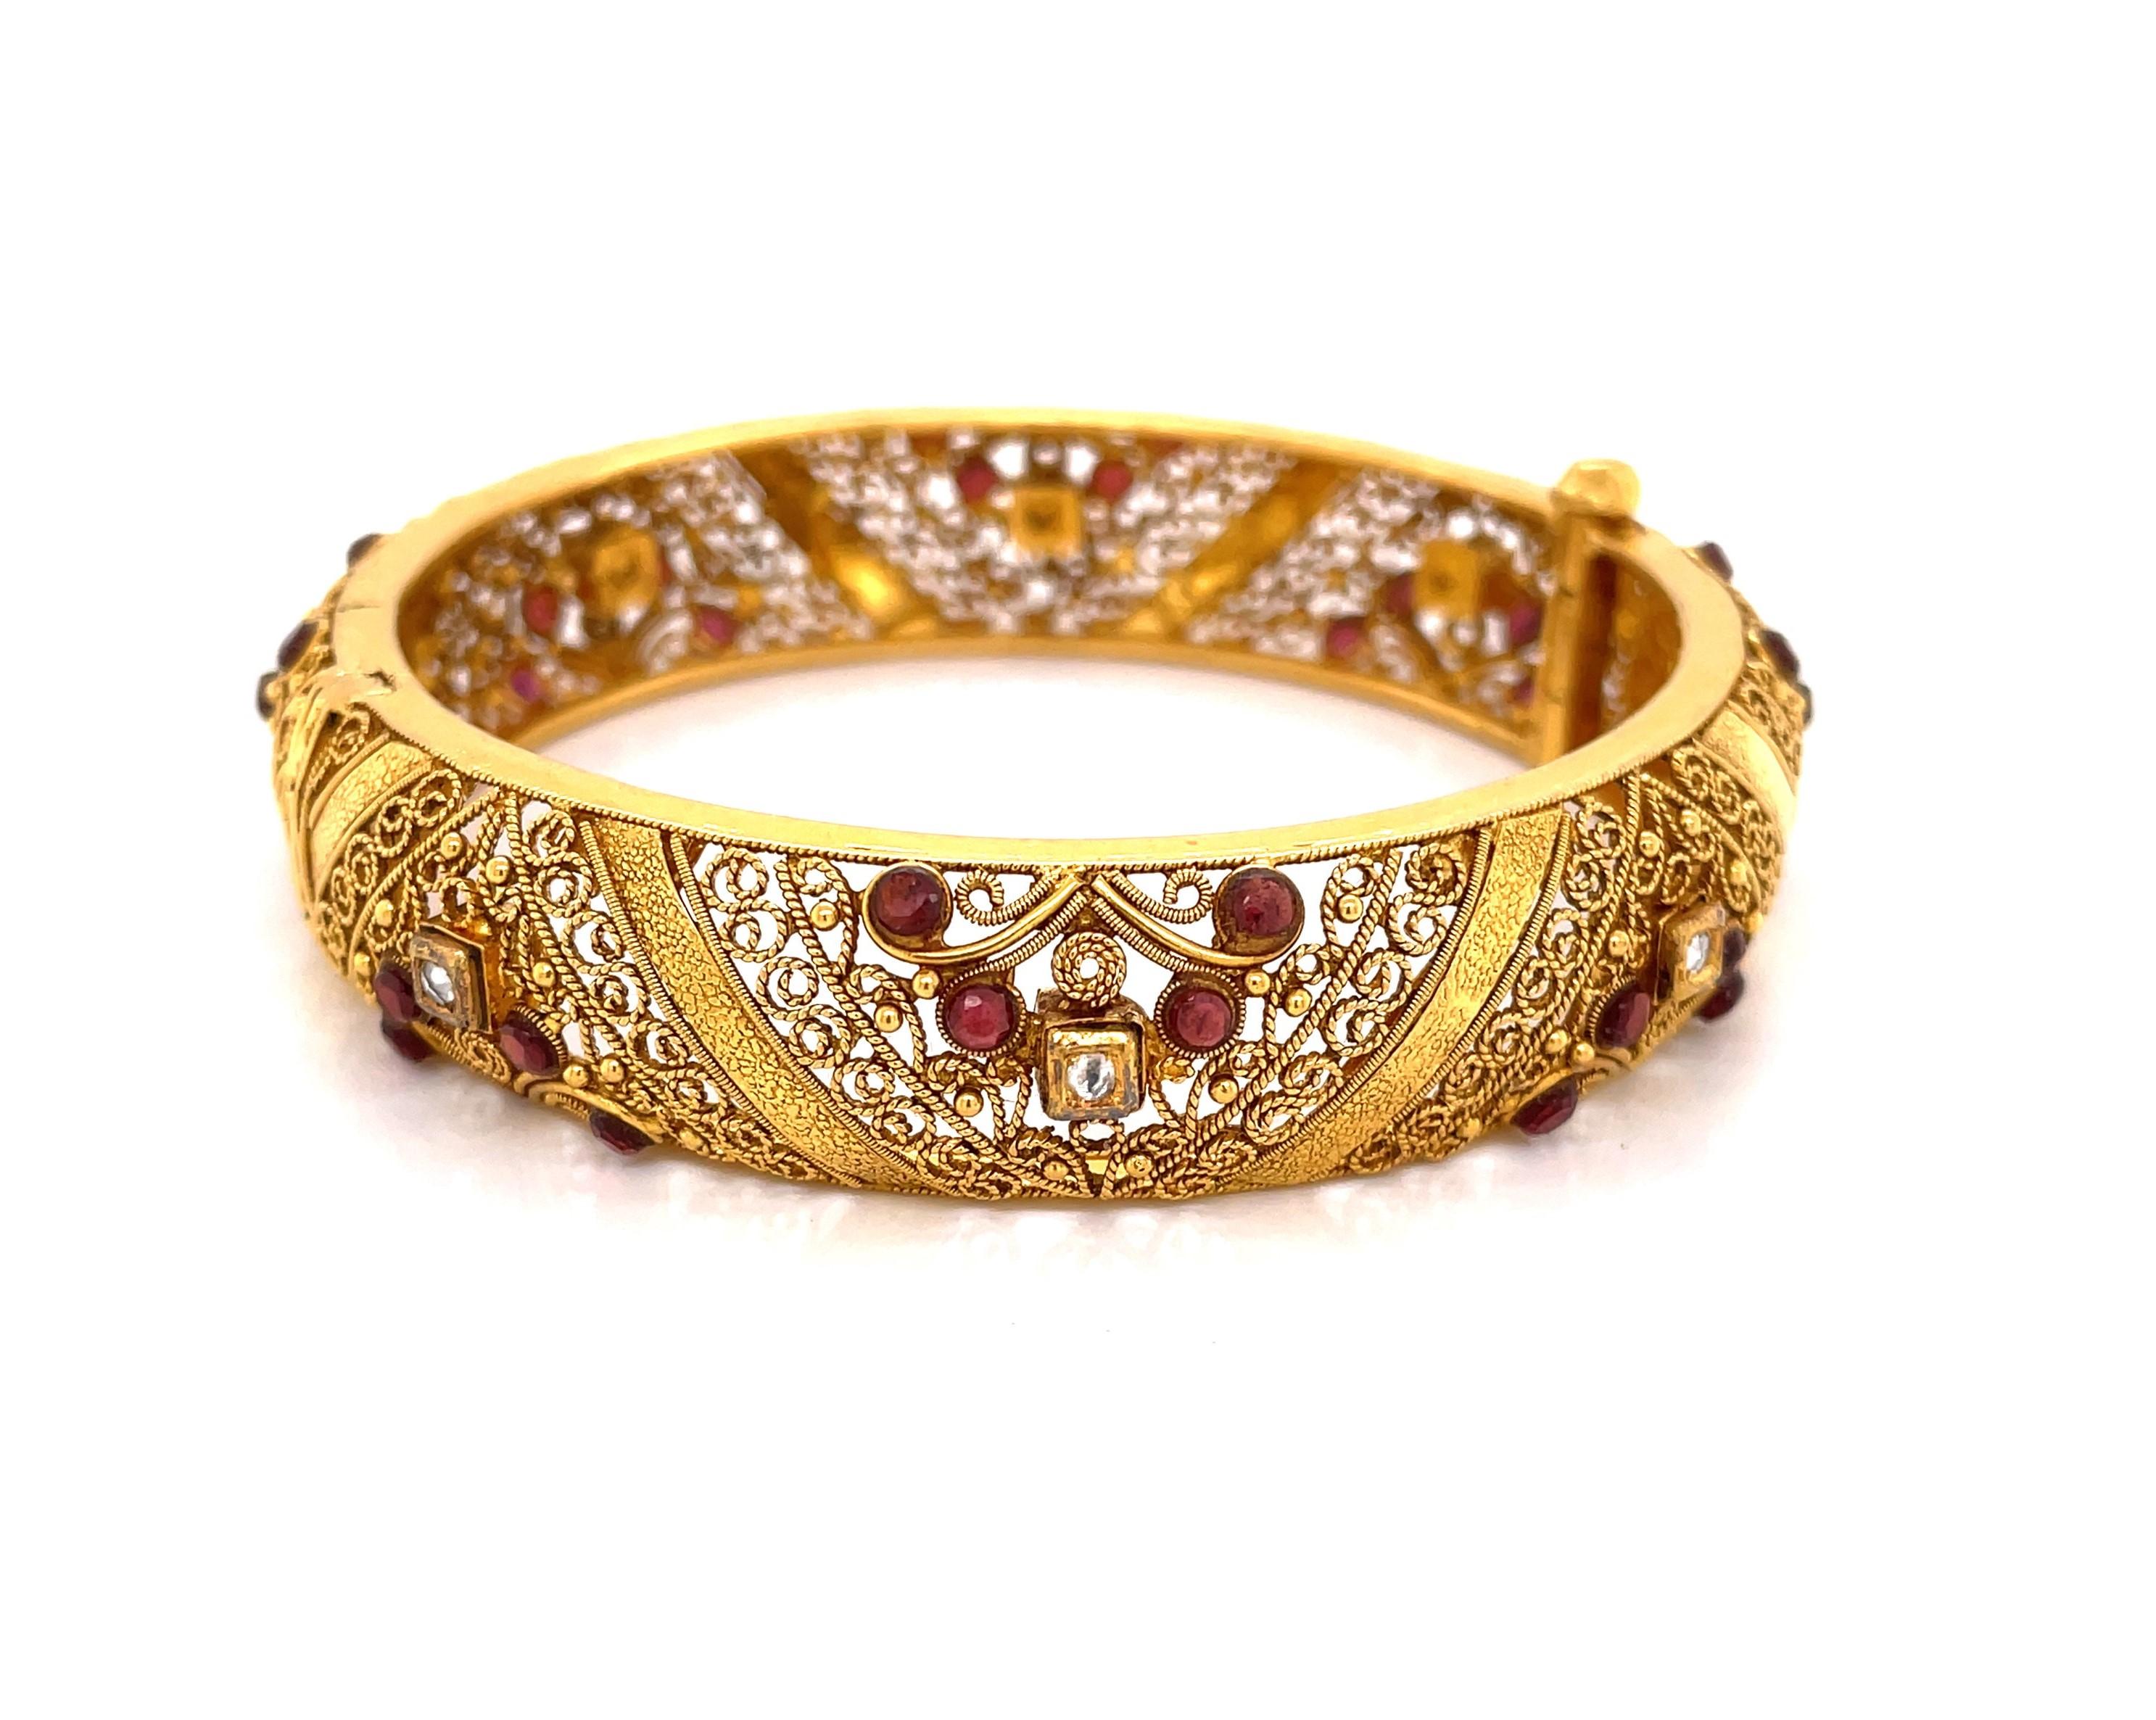 Lassen Sie sich von diesem Juwelen-Kunstwerk verzaubern, das eine indische Braut an ihrem Hochzeitstag schmücken soll.  In 22 Karat Gelbgold dieses atemberaubende filigrane Stück mit dekorativen Goldband Detail ist etwa 5/8 Zoll breit und ist